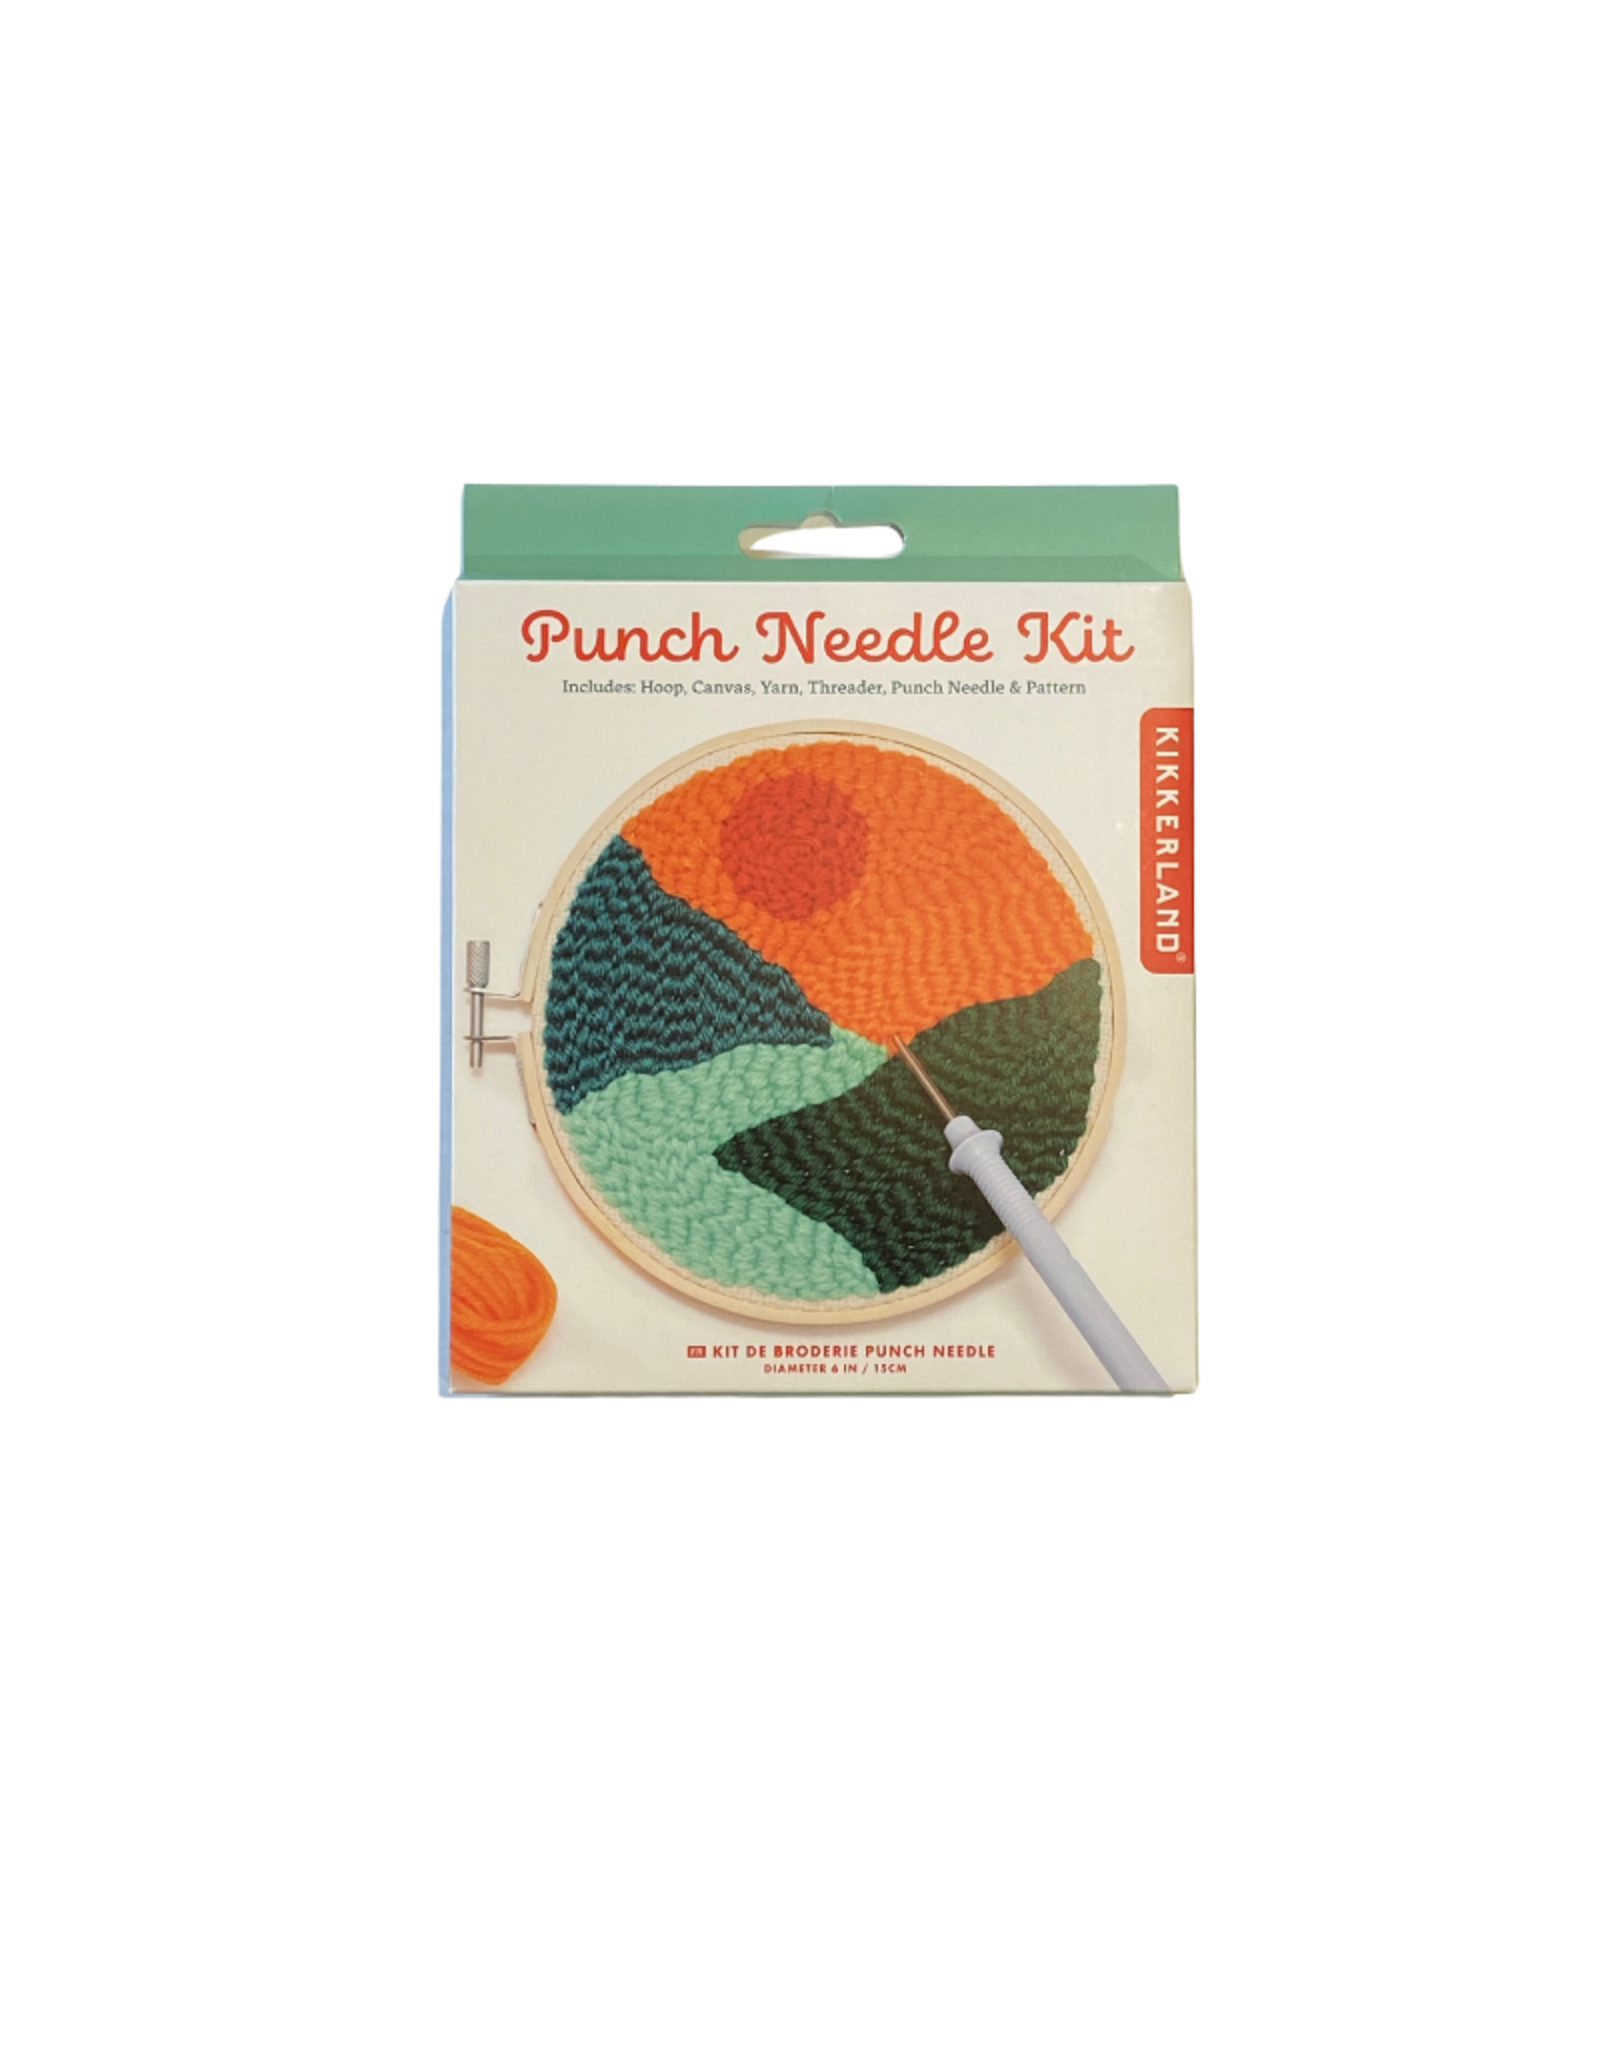 Punch Needle Kit - Landscape